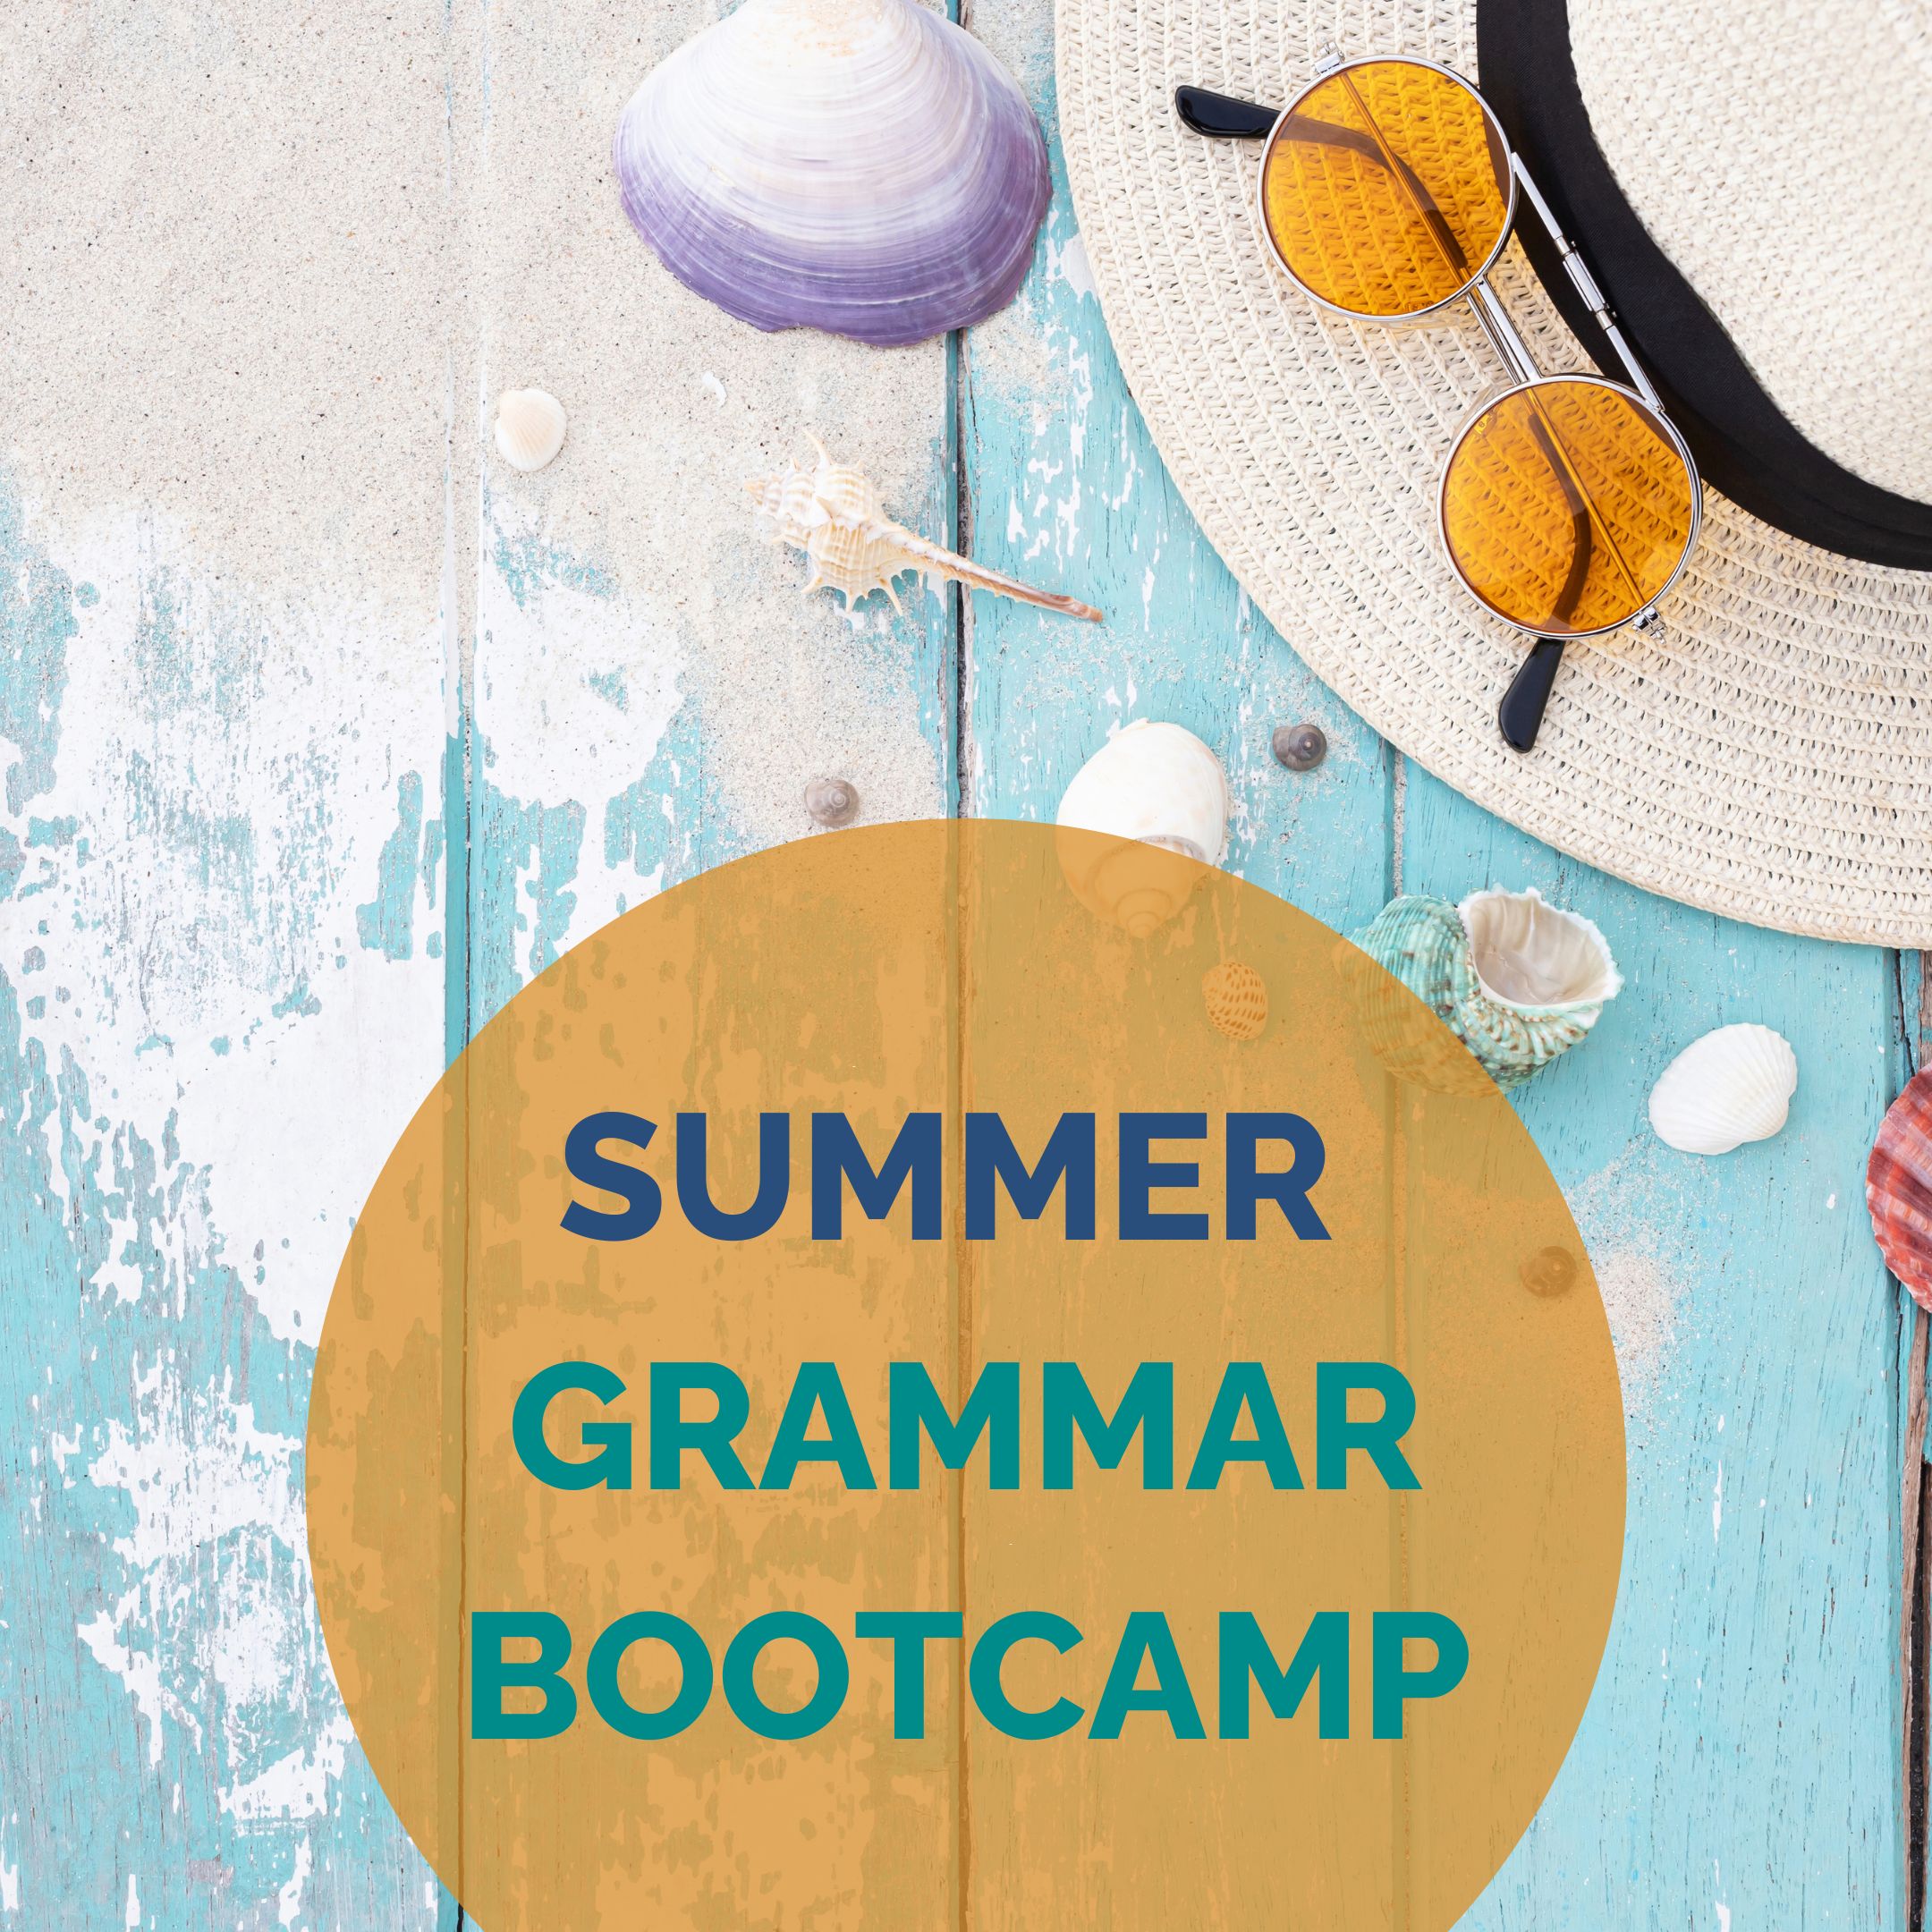 Grammar Bootcamp Summer Deal